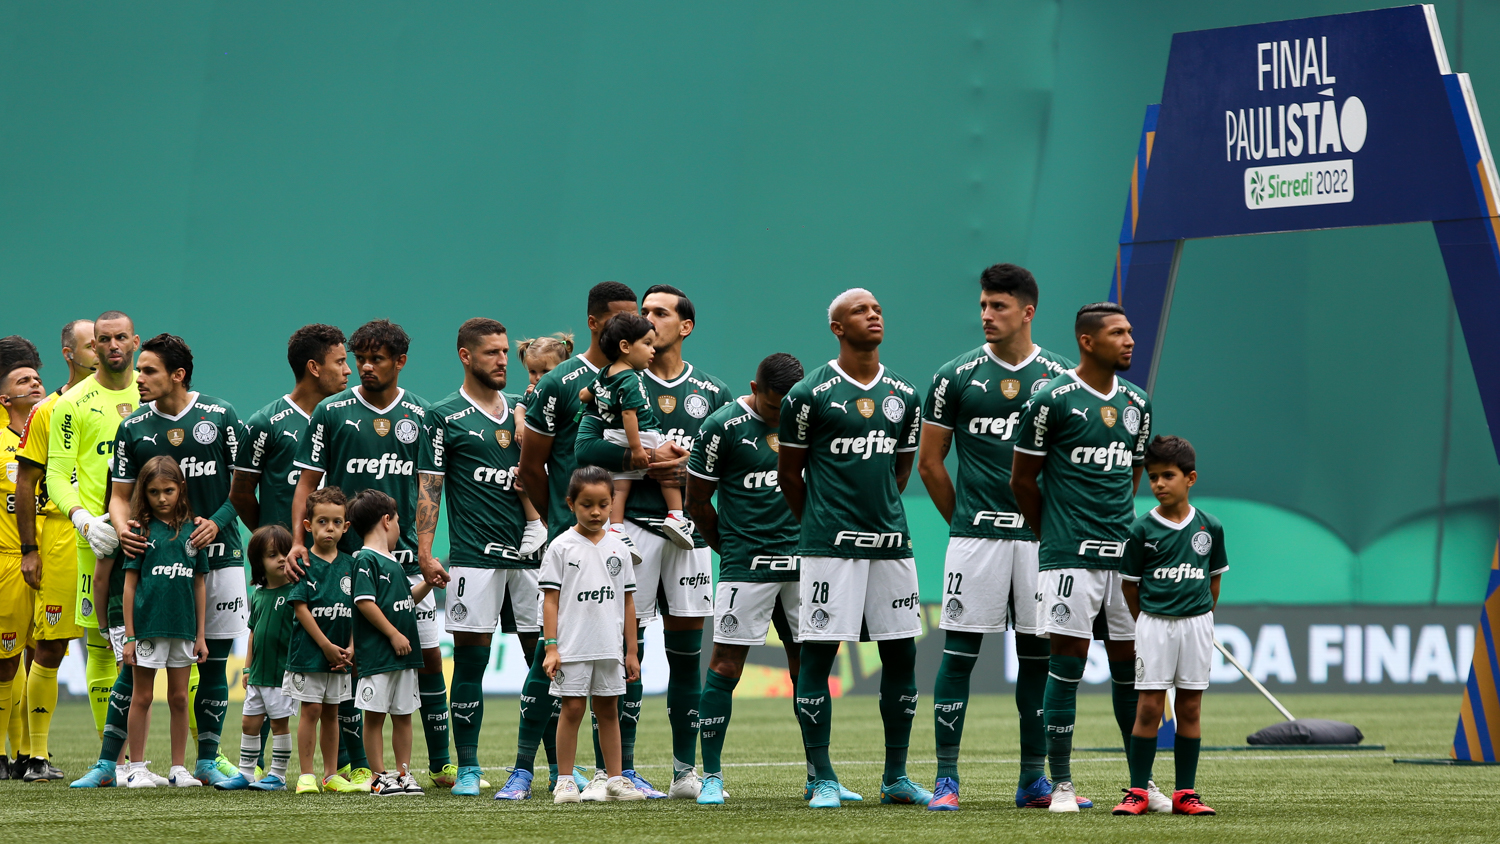 Crianças em campo antes do início da partida entre Palmeiras e São Paulo, no Allianz Parque, em São Paulo. (Foto: Fabio Menotti)